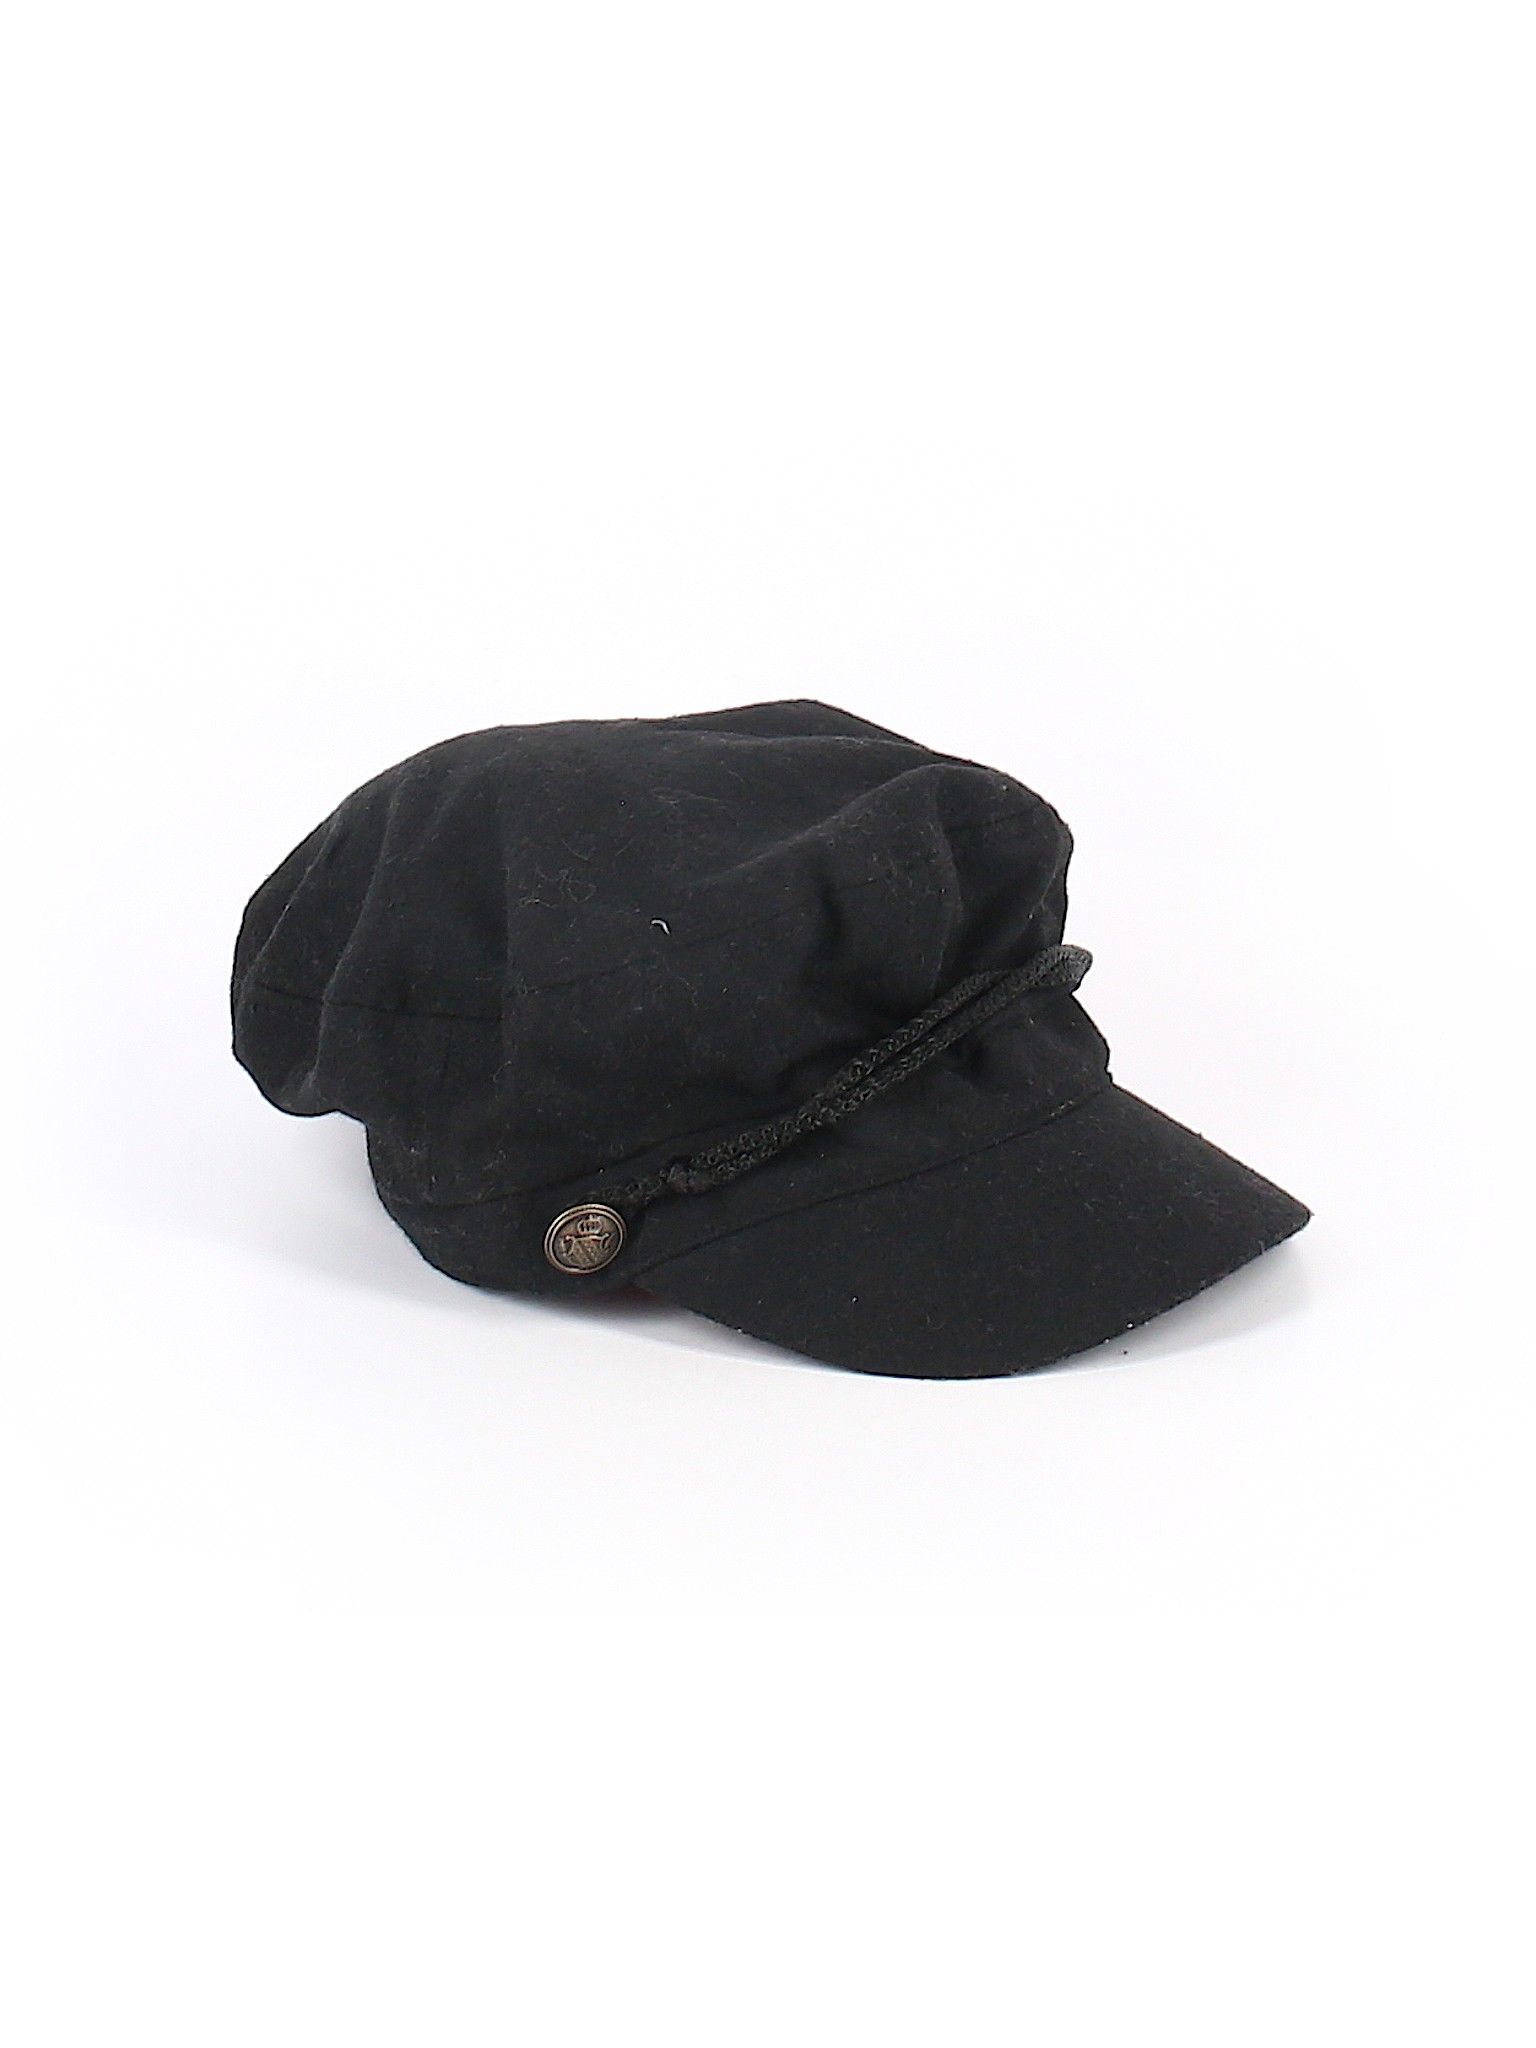 Target Hat Size 00: Black Women's Accessories - 42321276 | thredUP